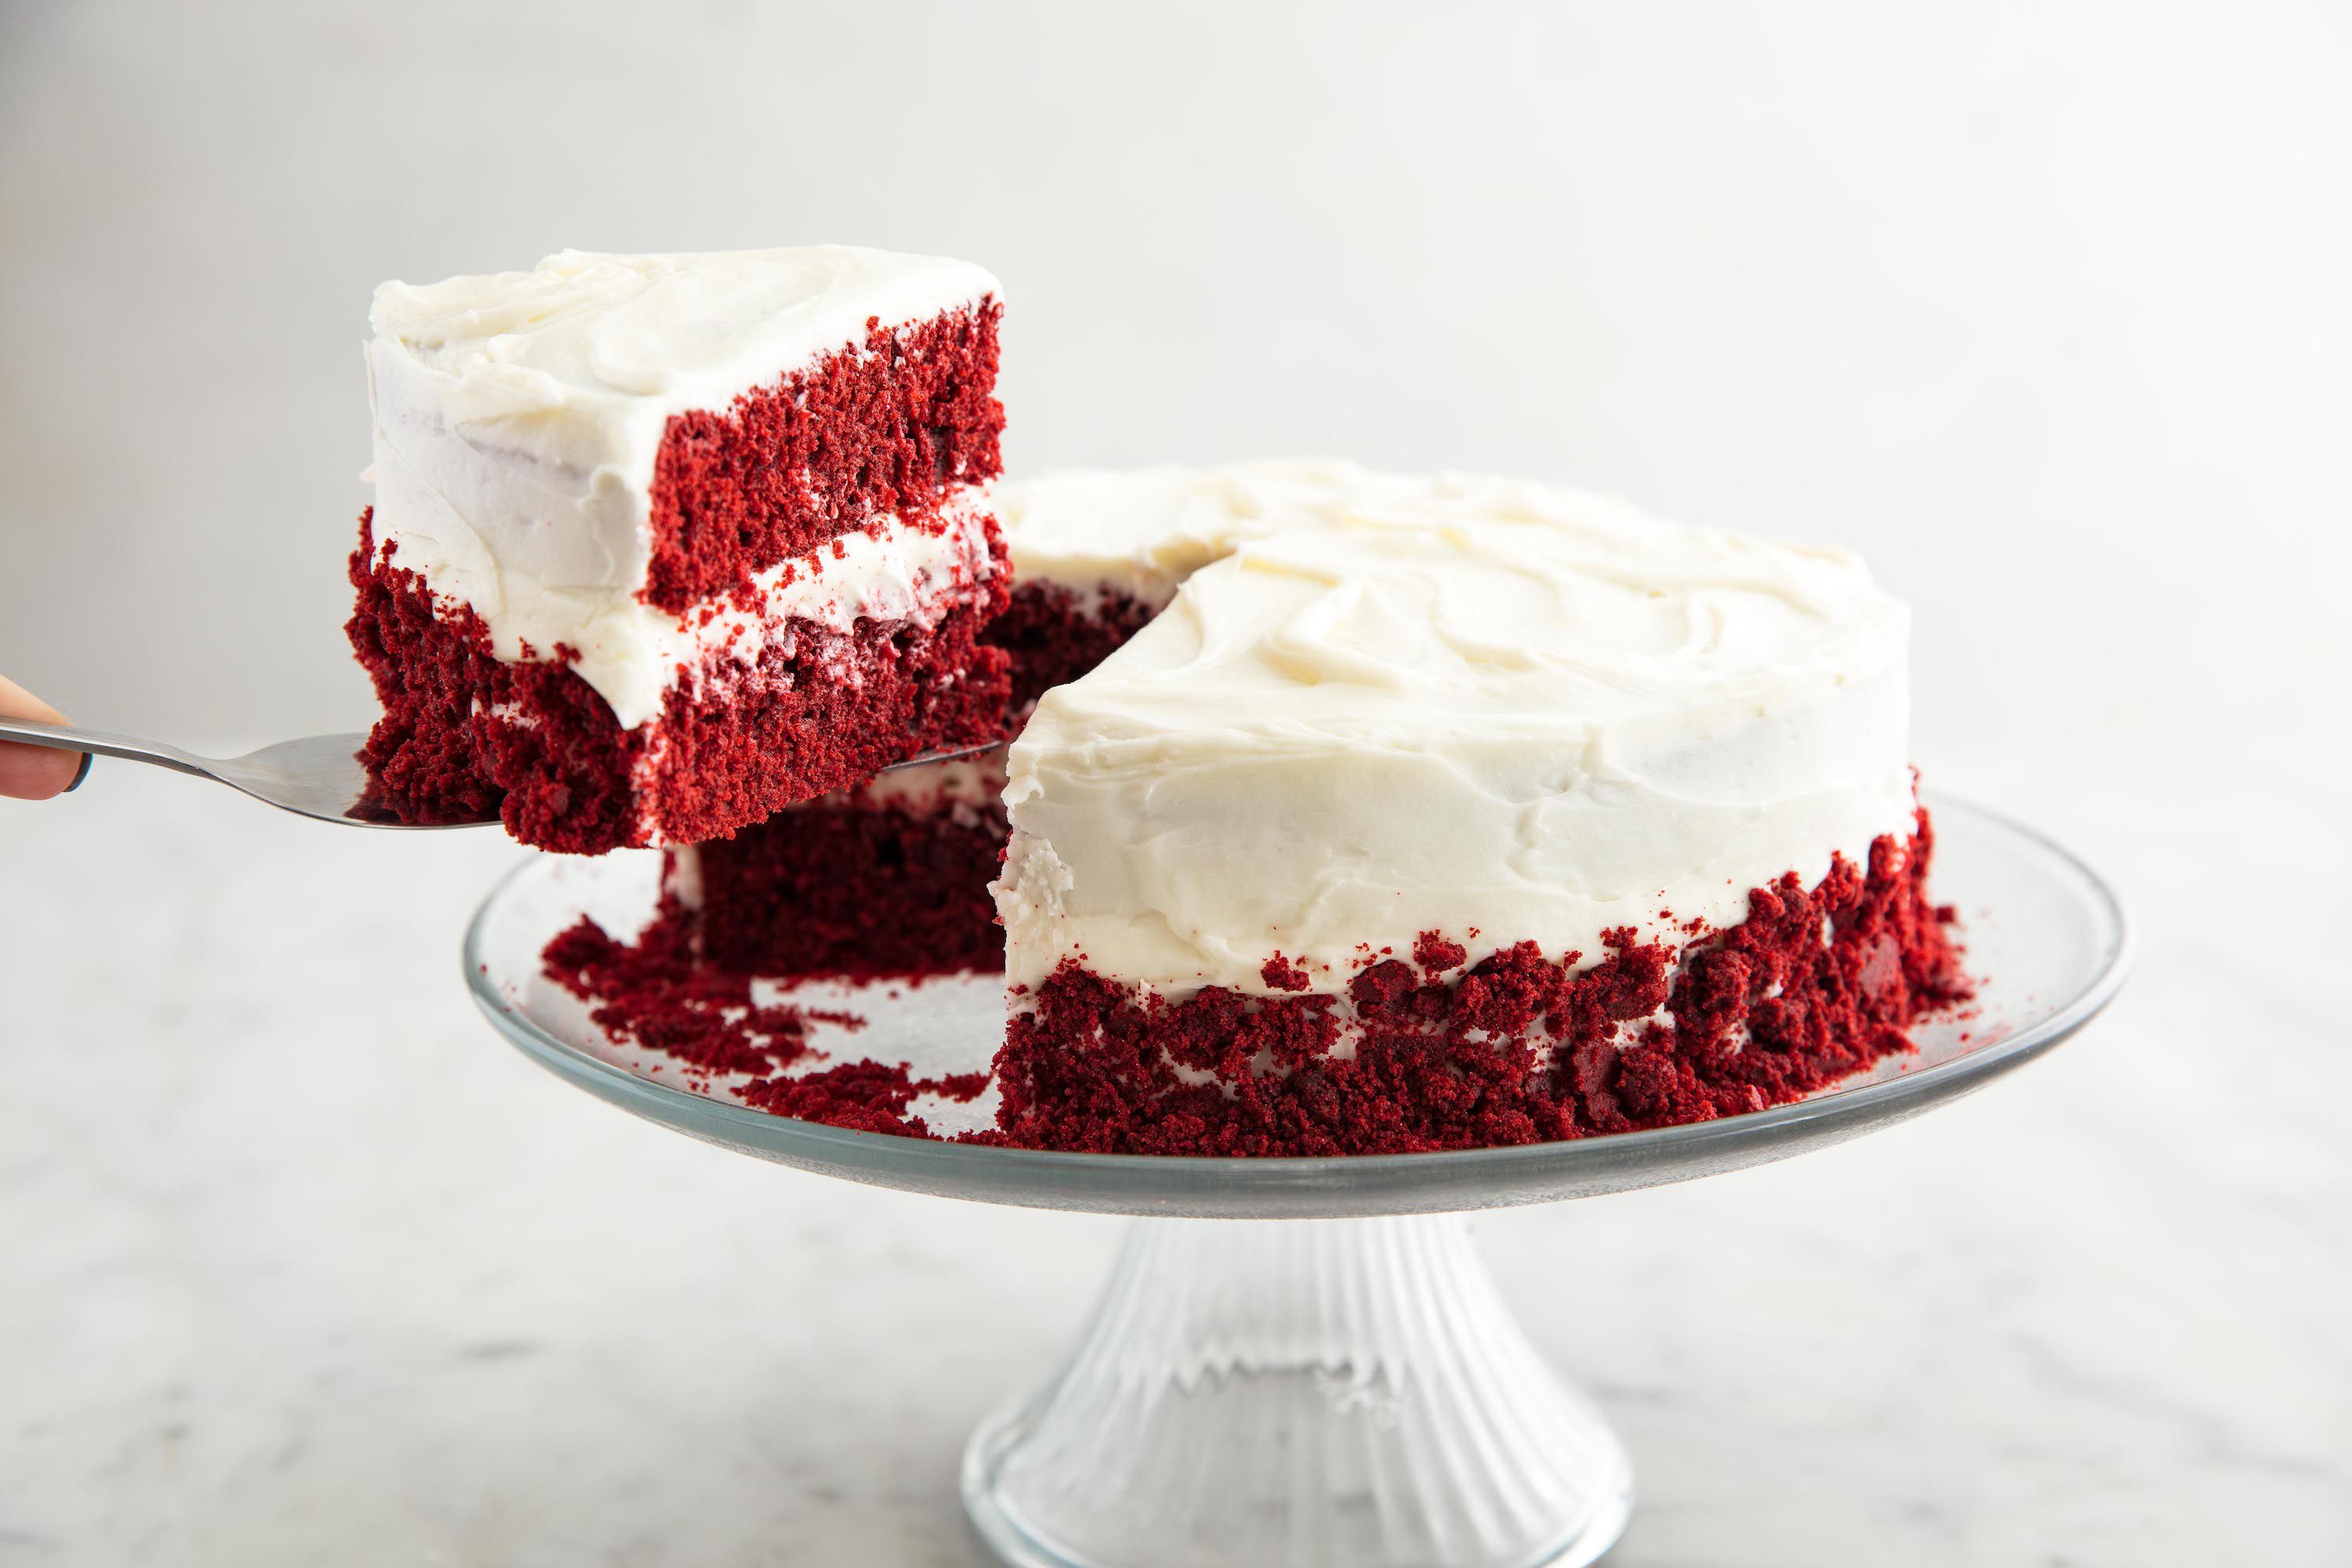 Best Homemade Red Velvet Cake Recipe - How to Make Easy Red Velvet Cake